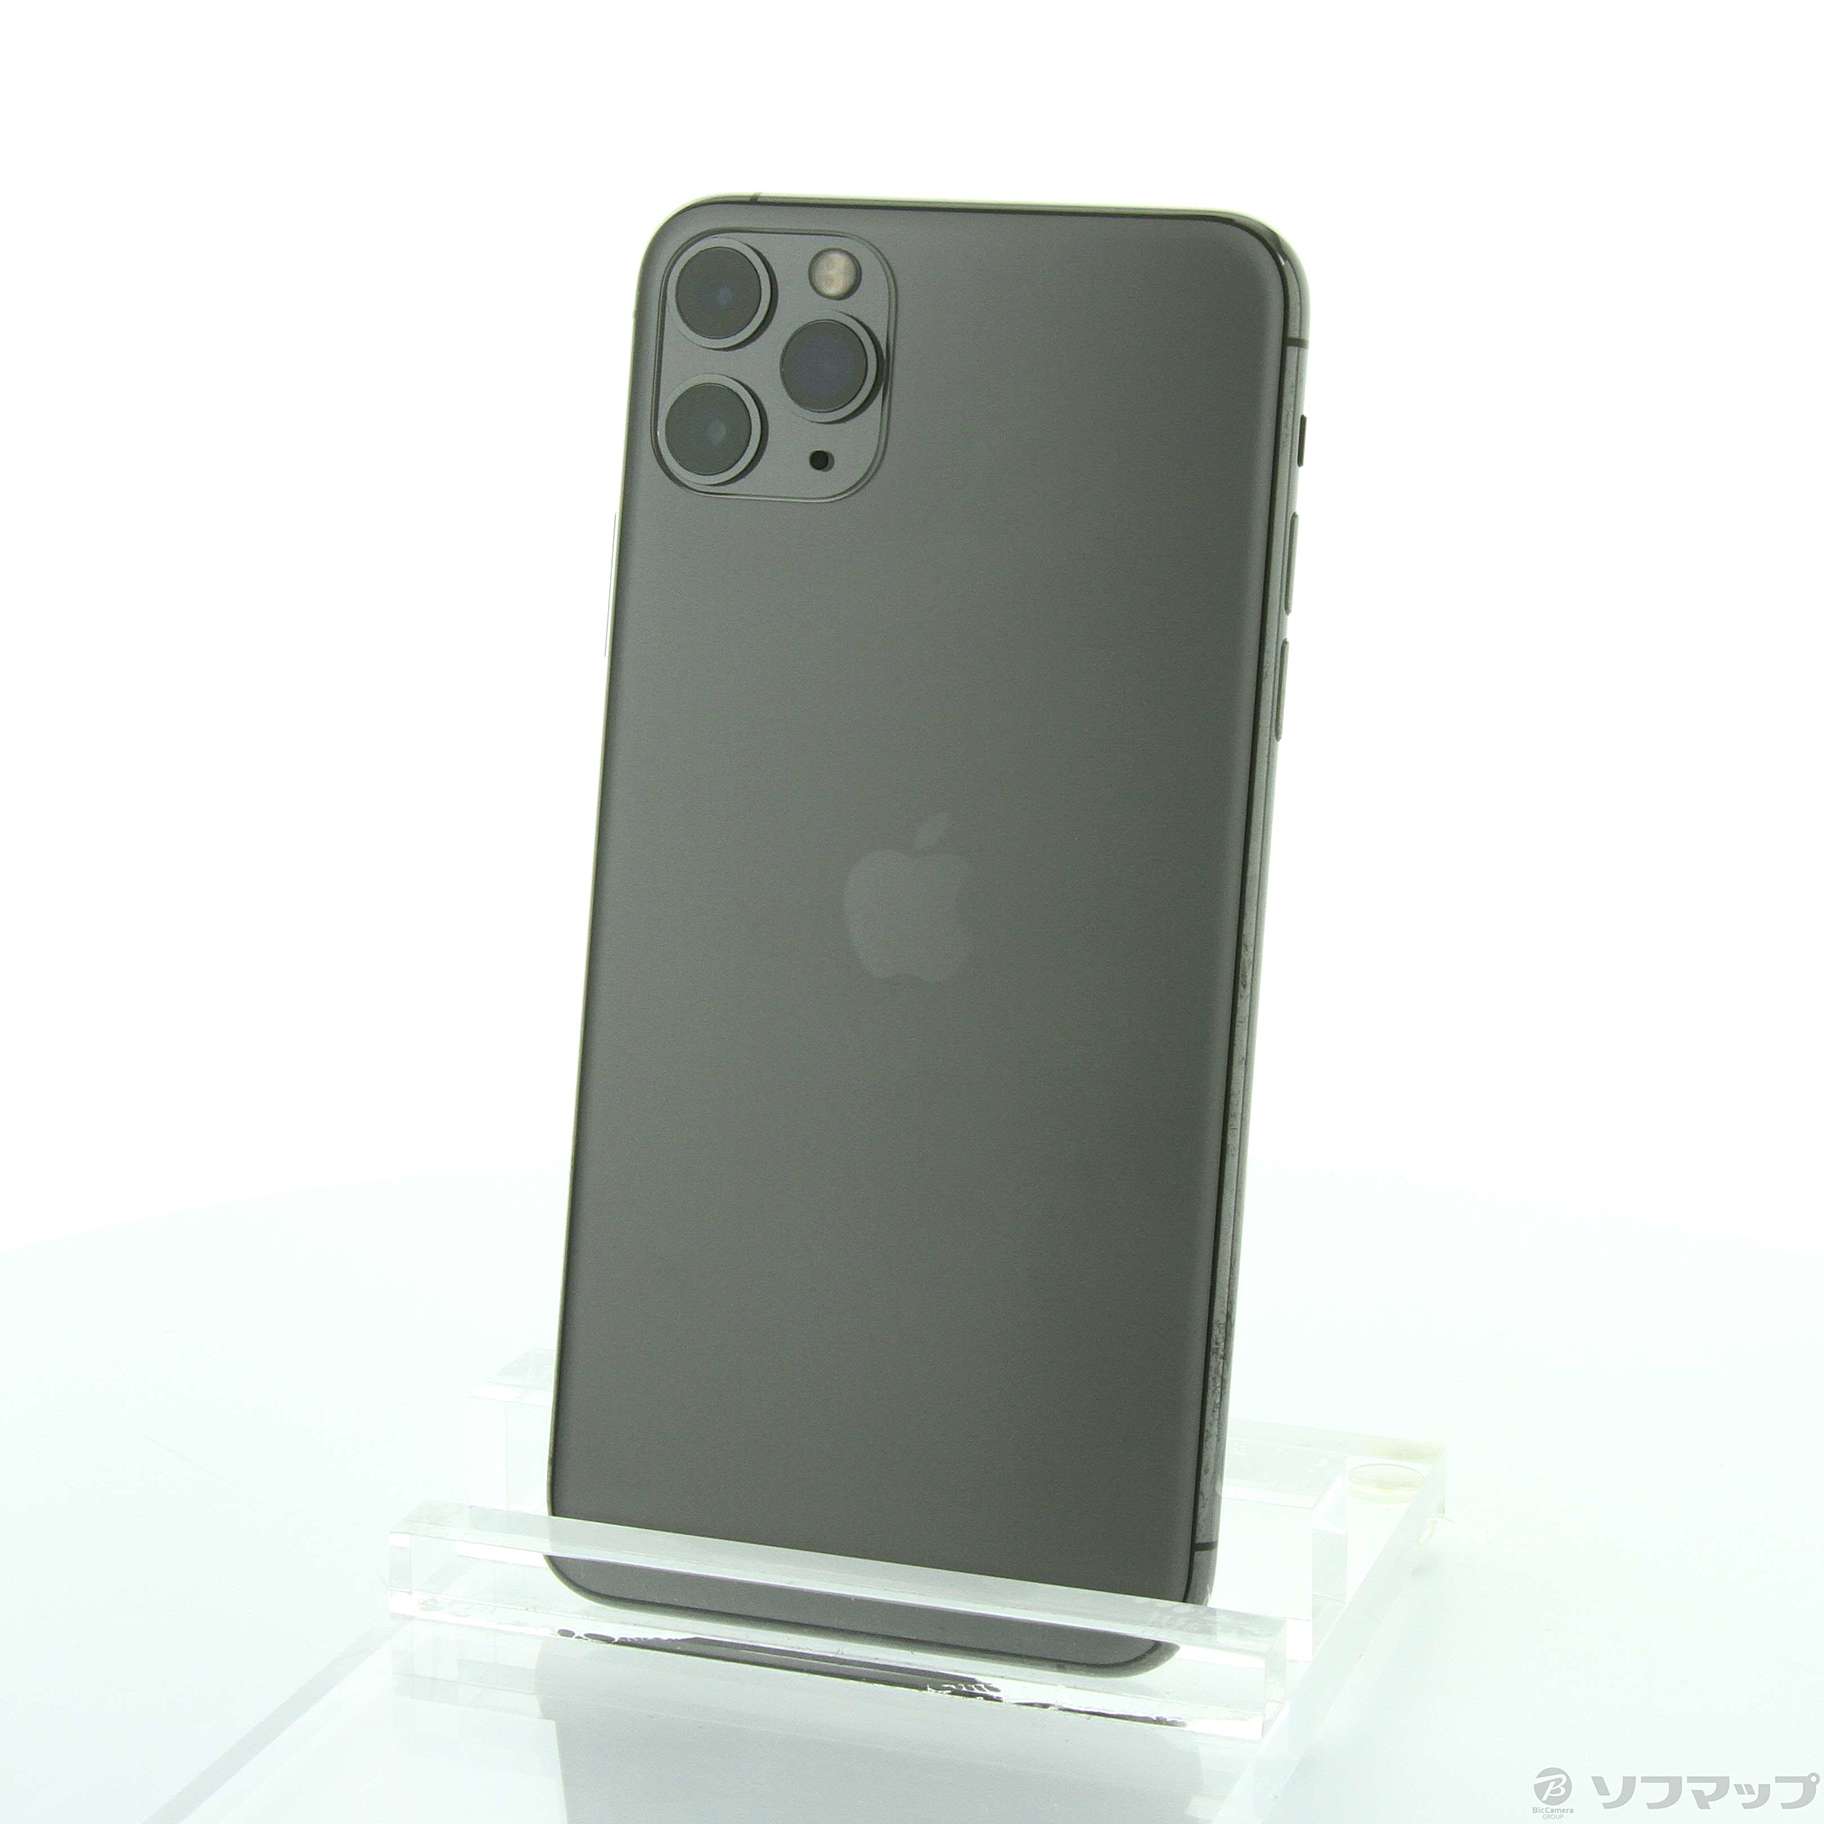 アップル iPhone11 Pro Max 256GB スペースグレイ soft